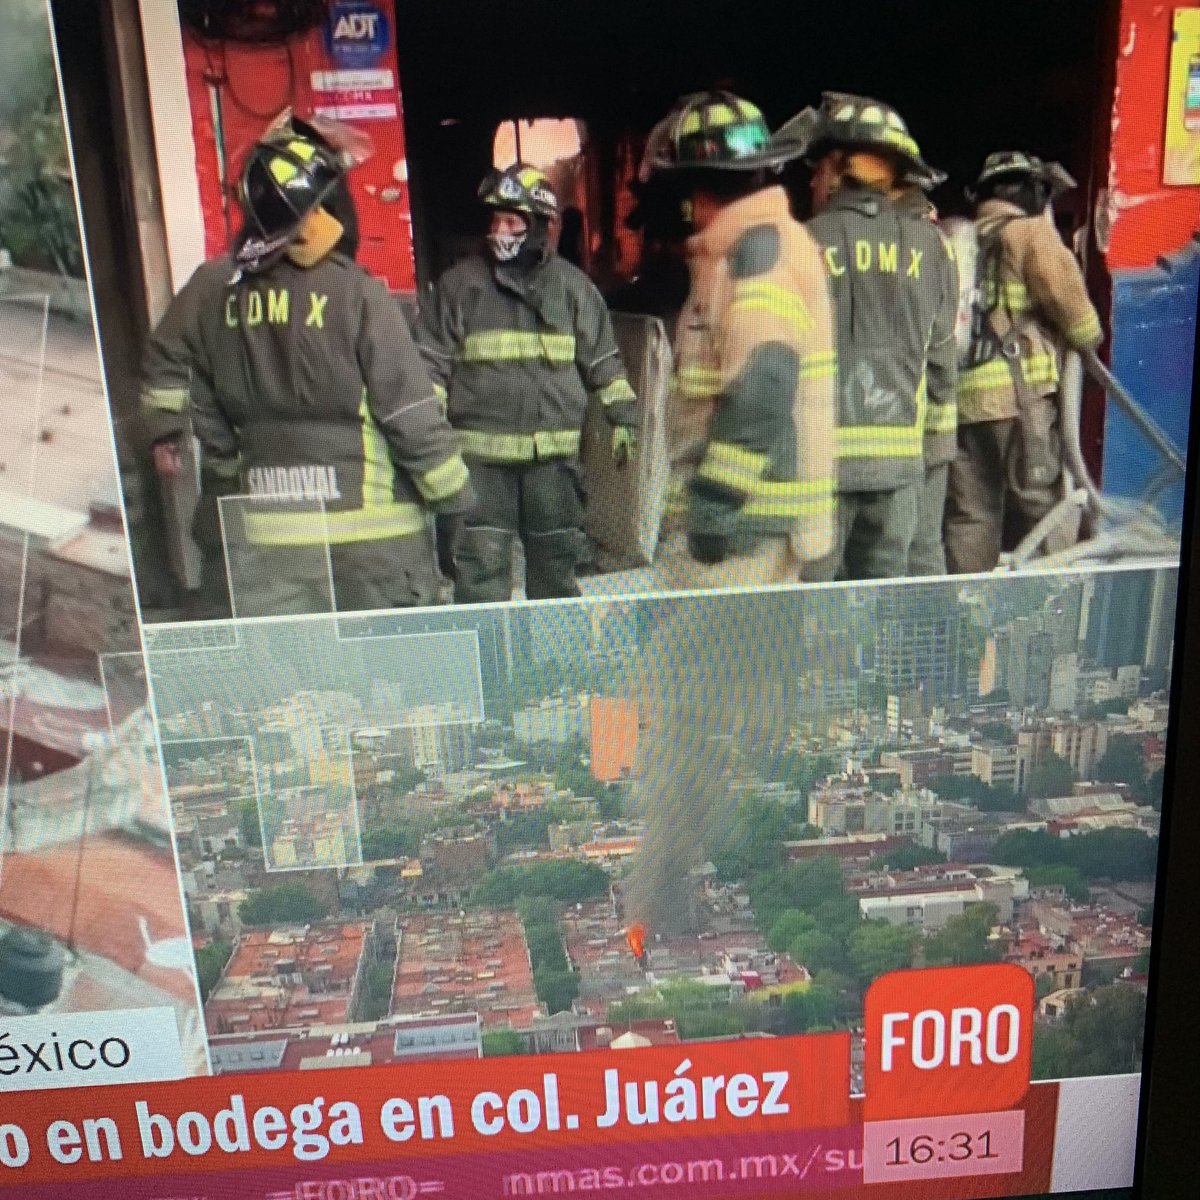 Increíble el Heroico Cuerpo de Bomberos. La destreza para entrar #ColoniaJuarez #incendio